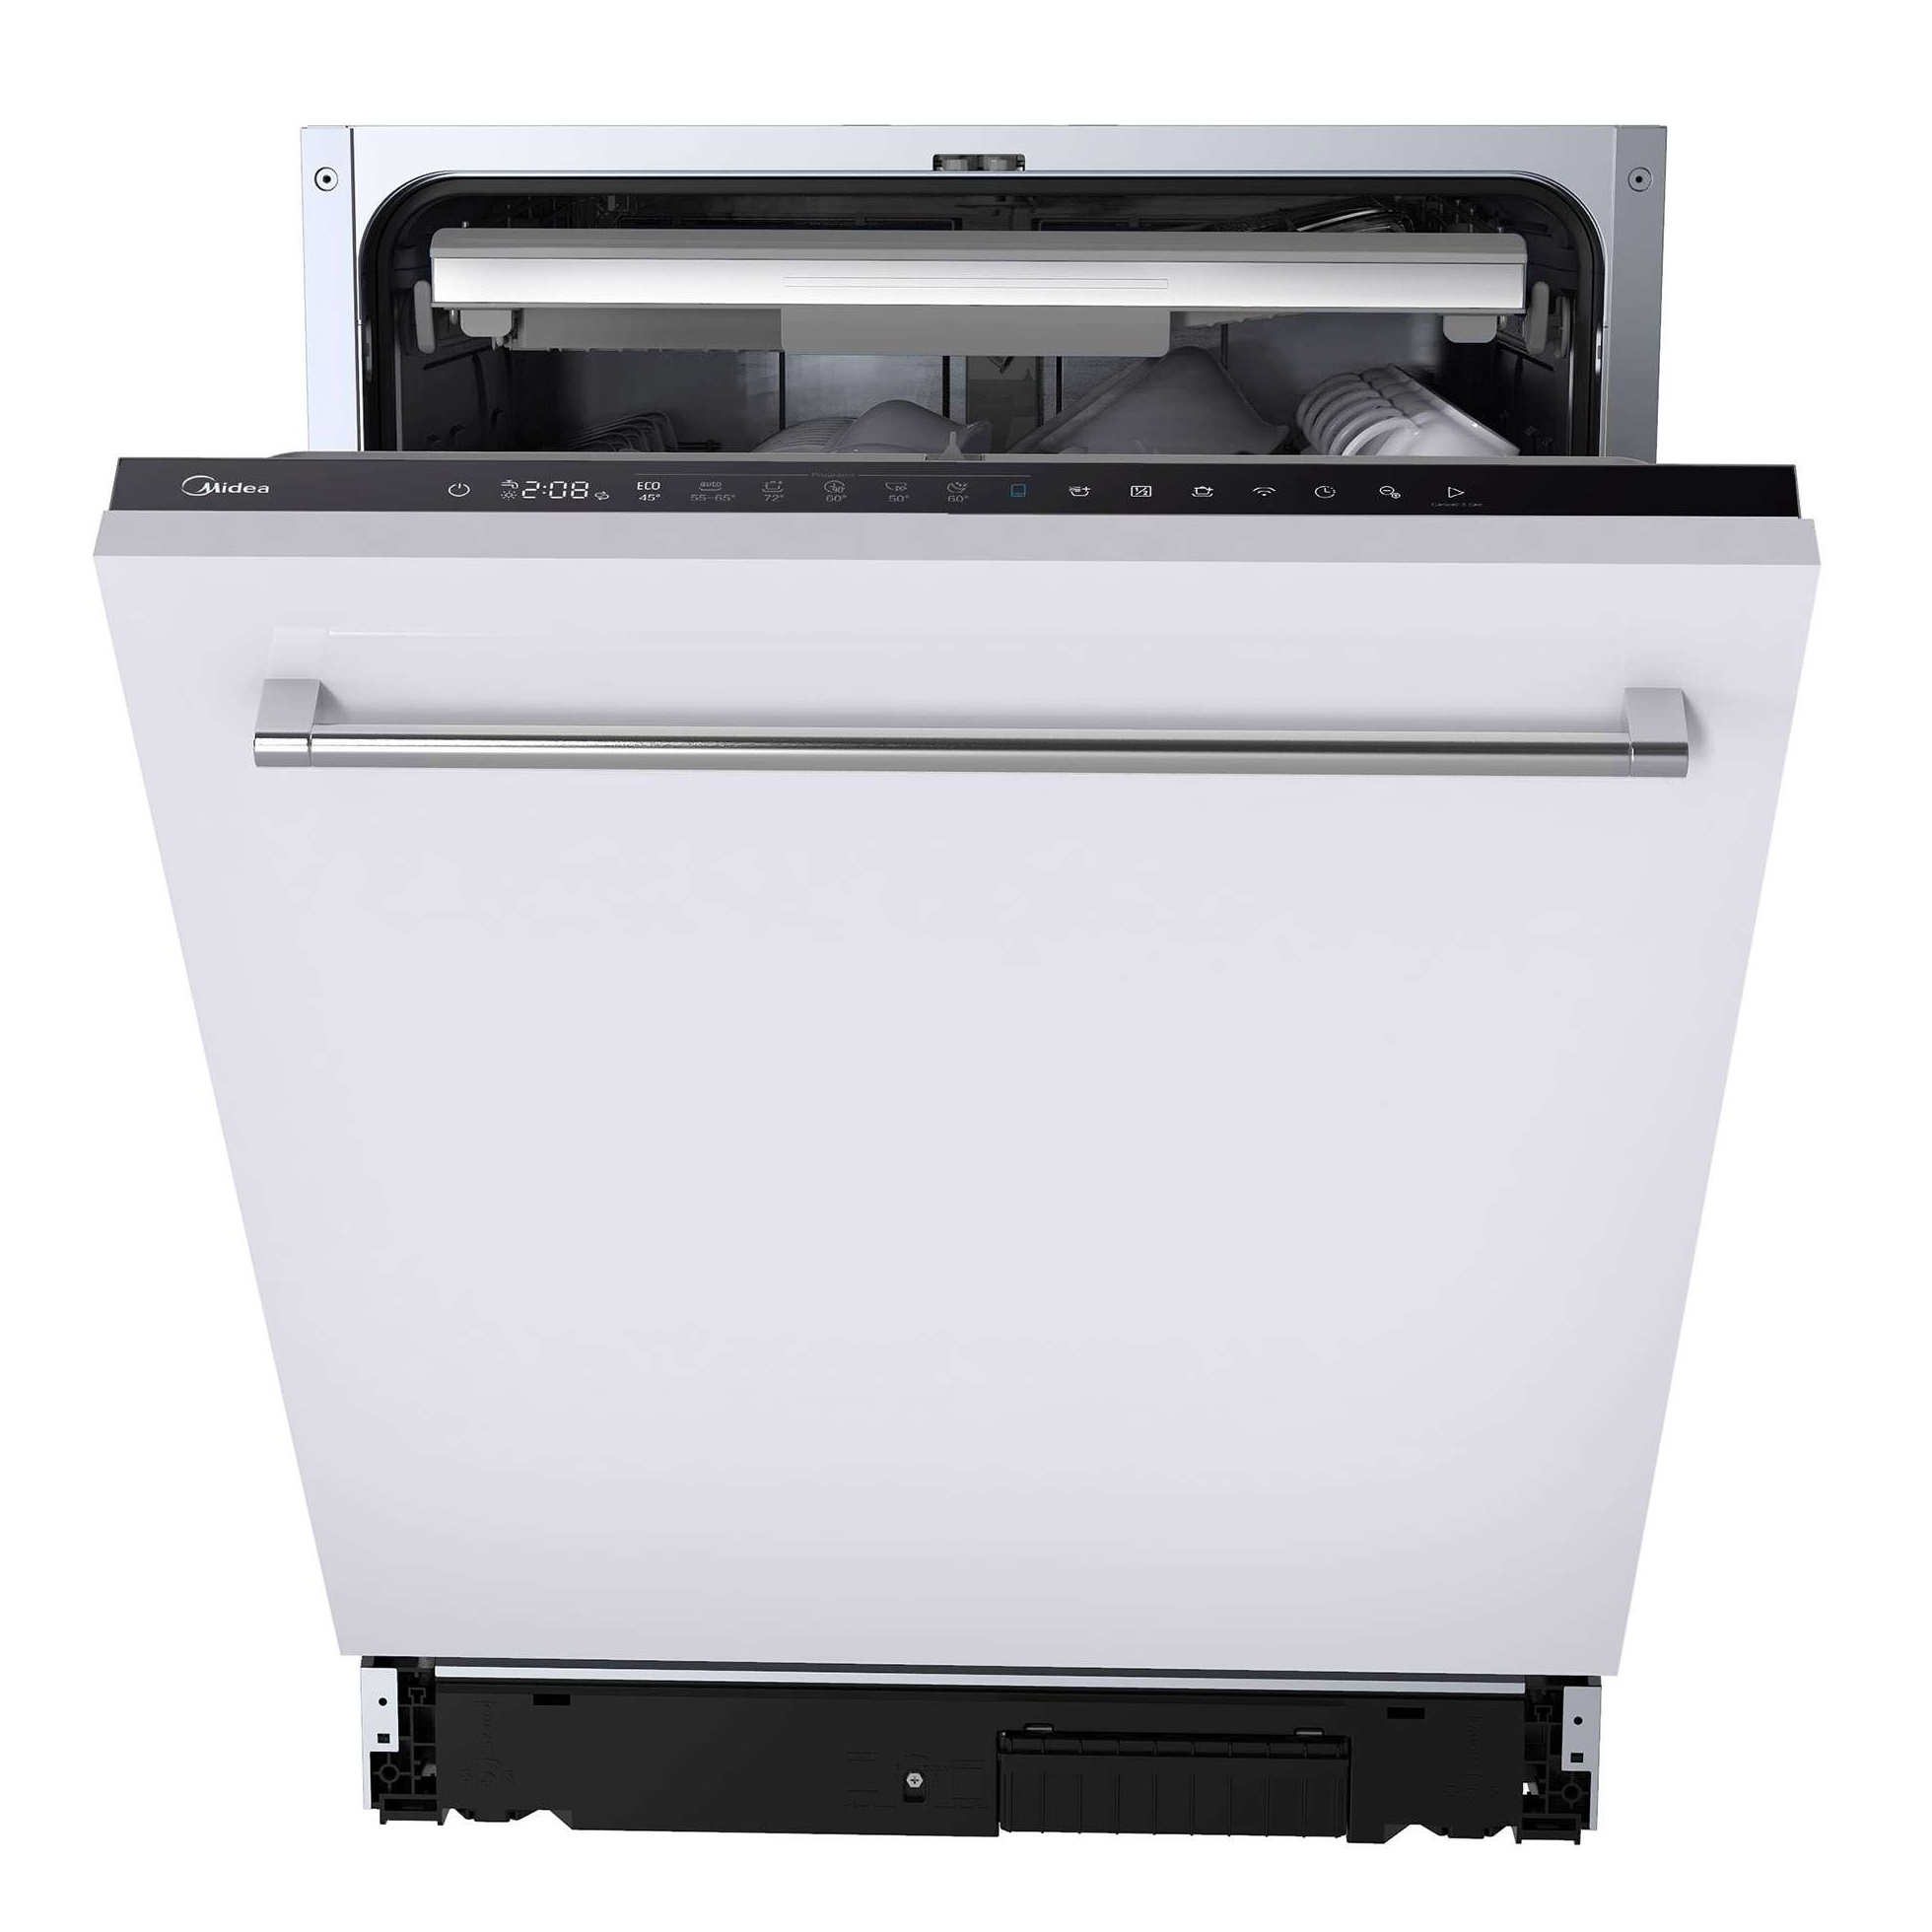 Встраиваемая посудомоечная машина Midea MID60S360i встраиваемая посудомоечная машина midea mid60s360i